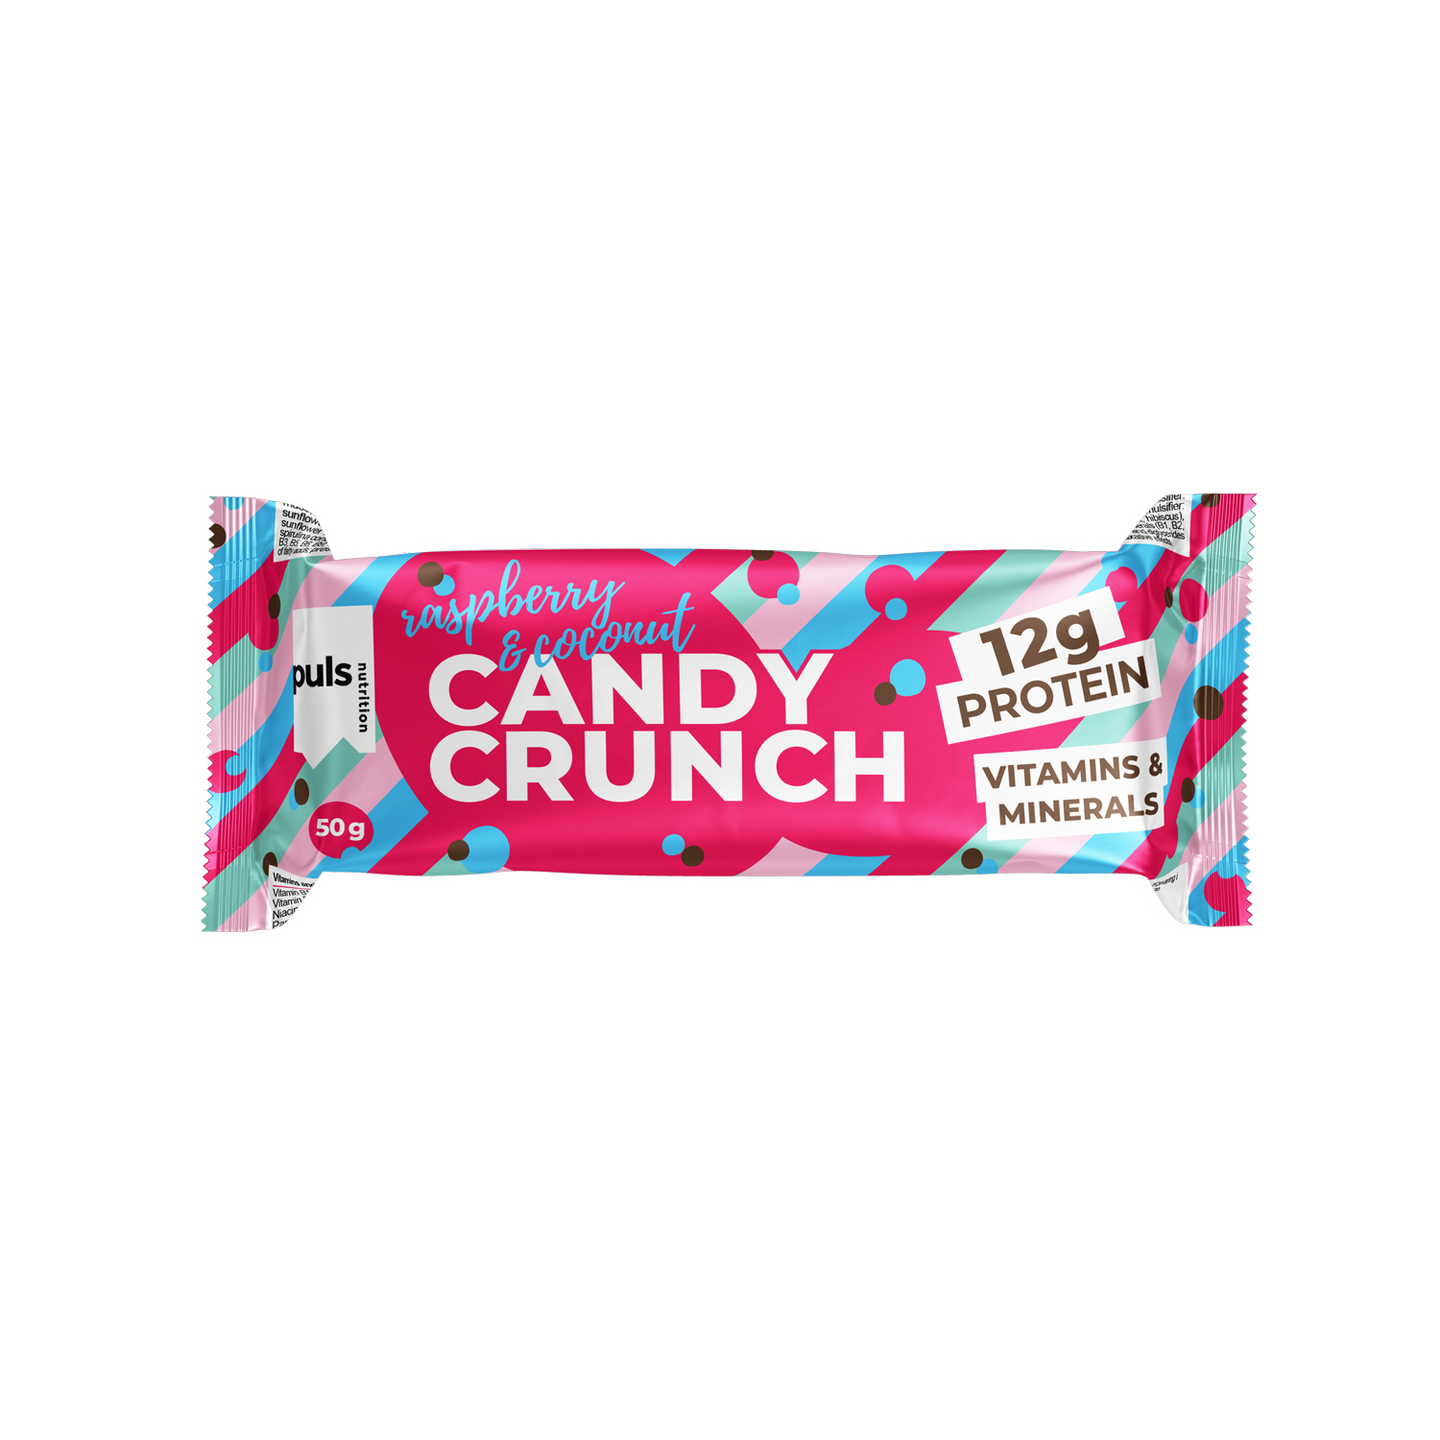 PULS Candy Crunch proteiinipatukka vadelma & kookos 50g